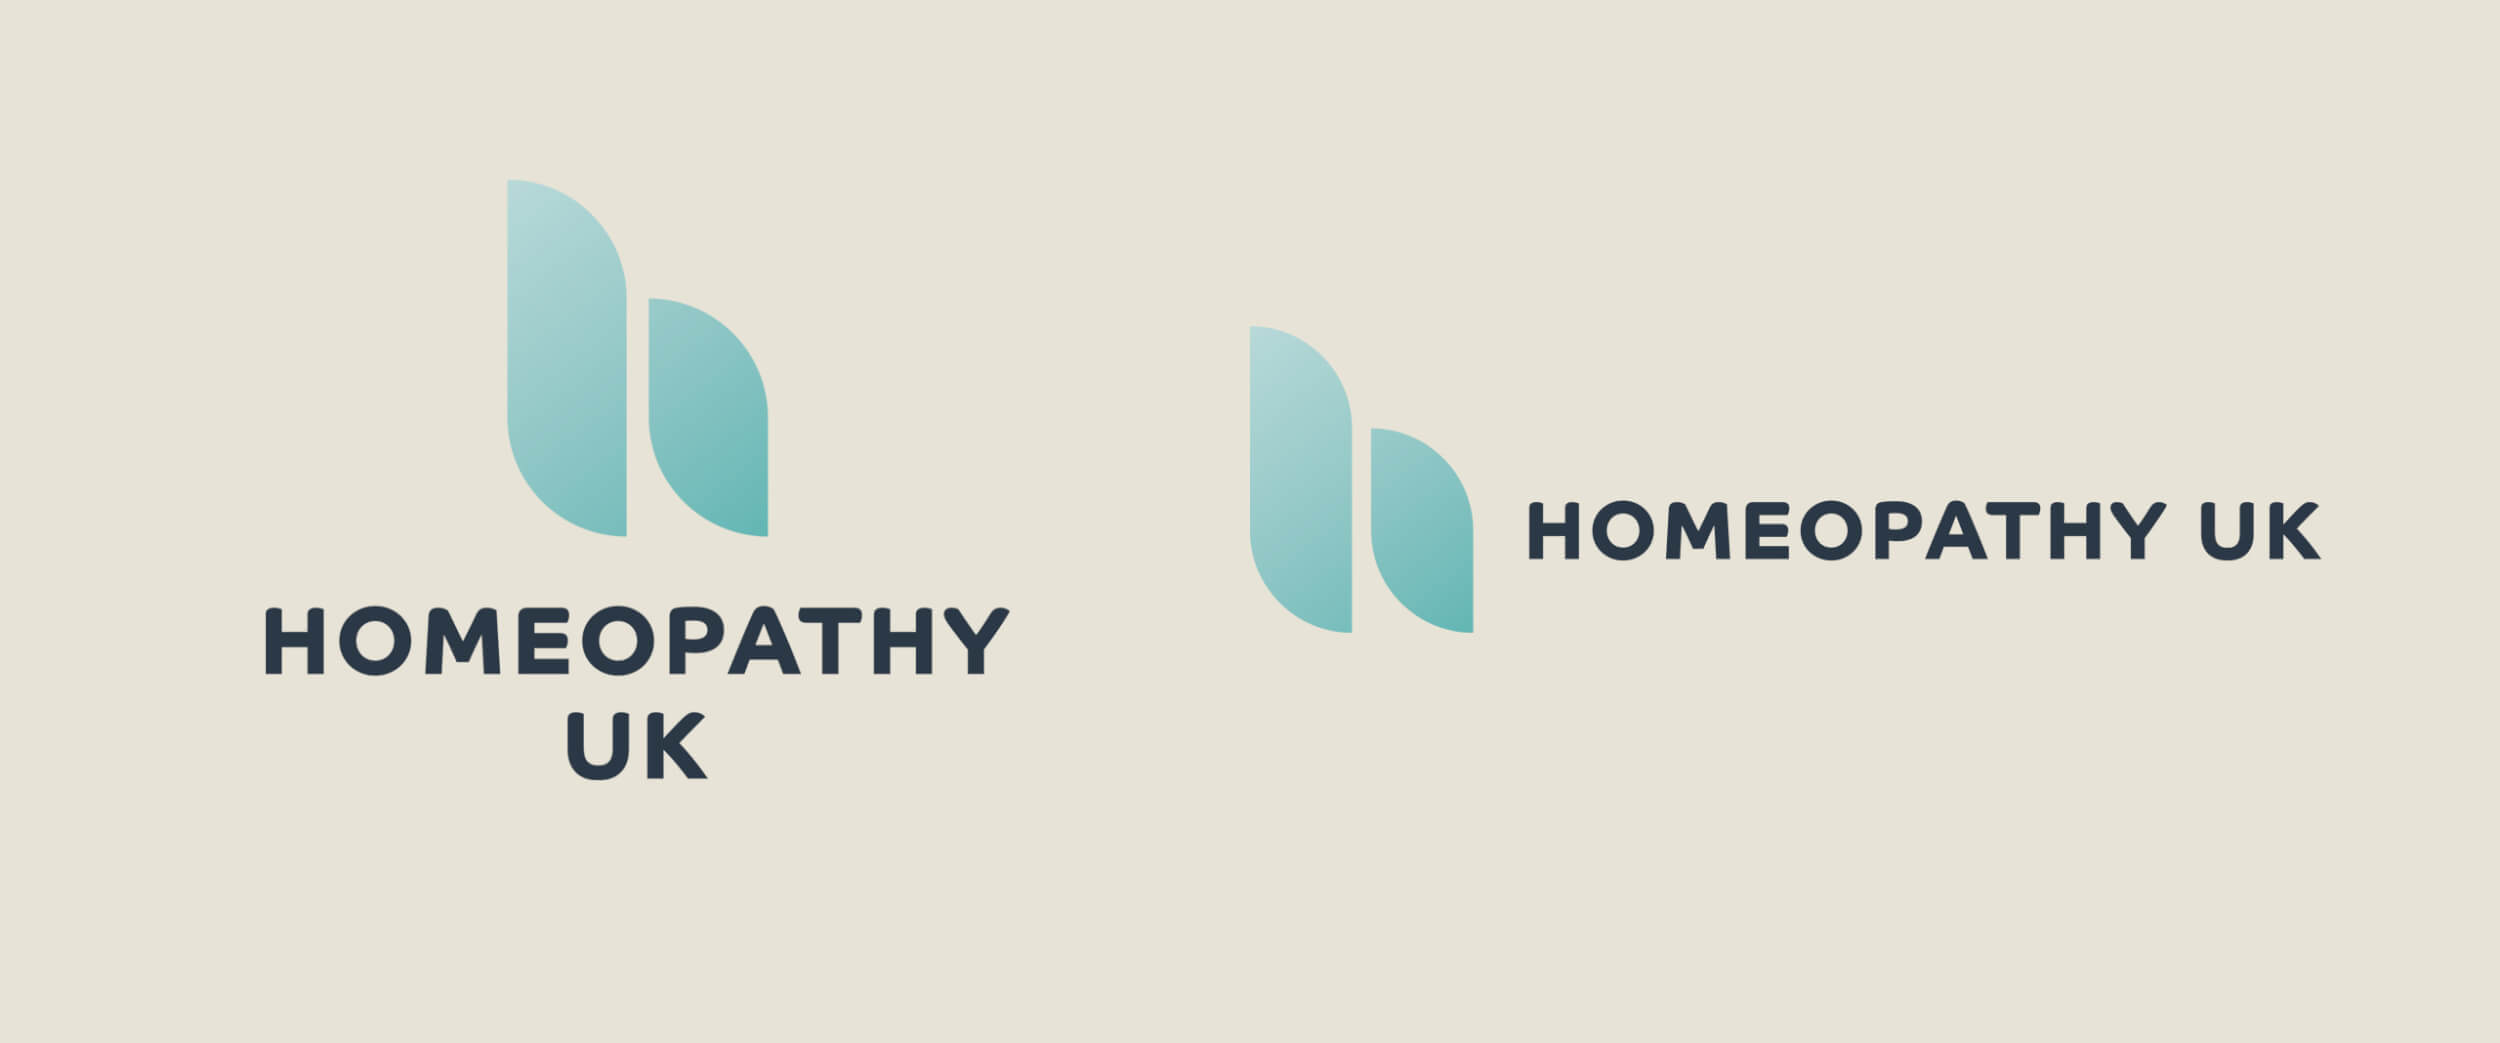 Homeopathy UK logo variations